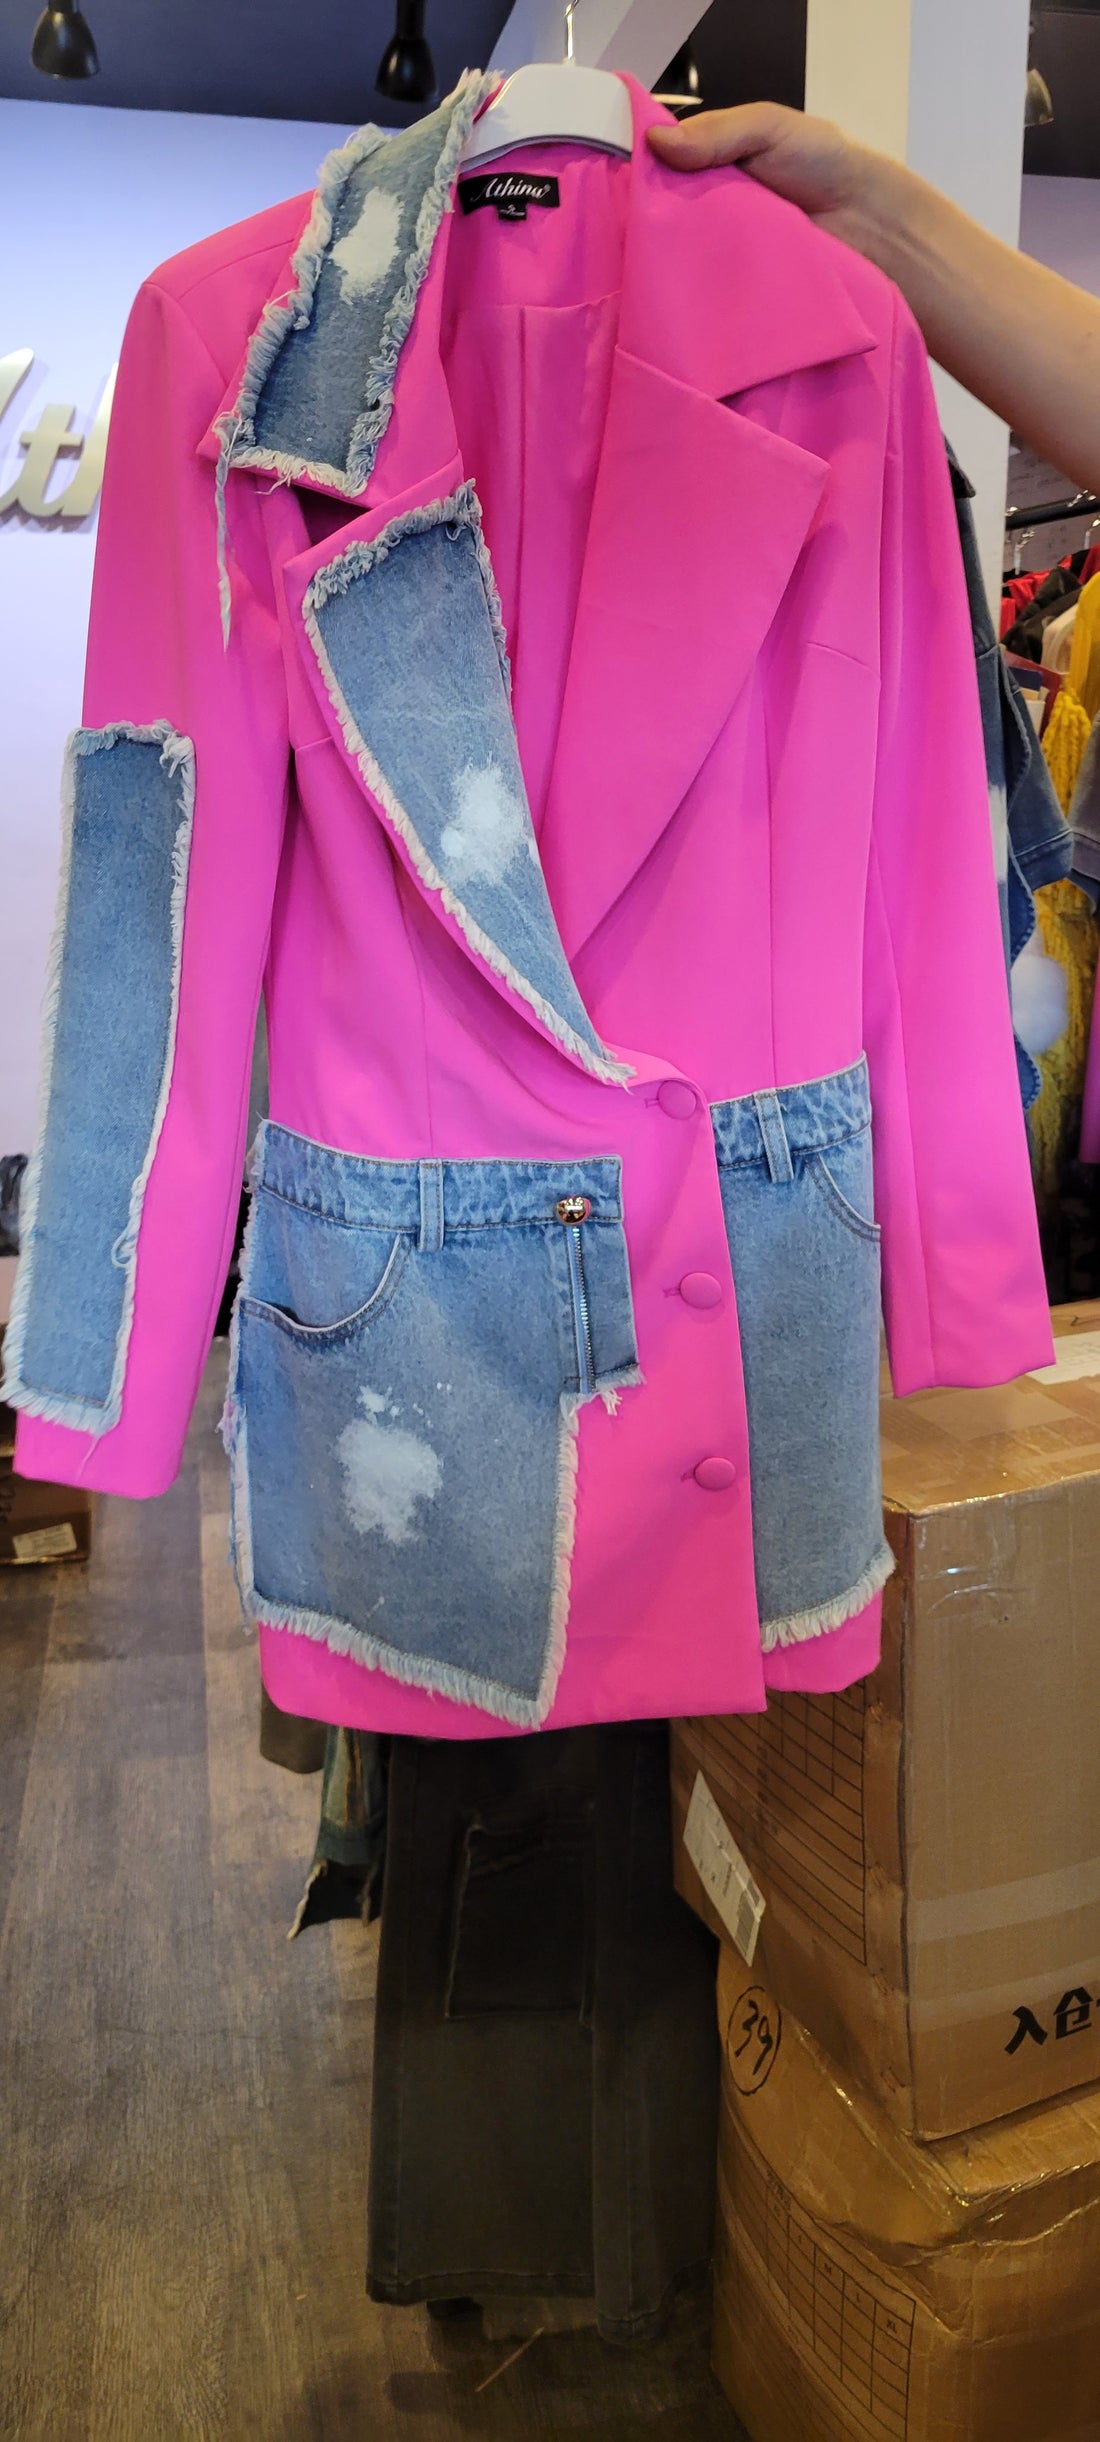 The Pink Blazer/Dress with Denim